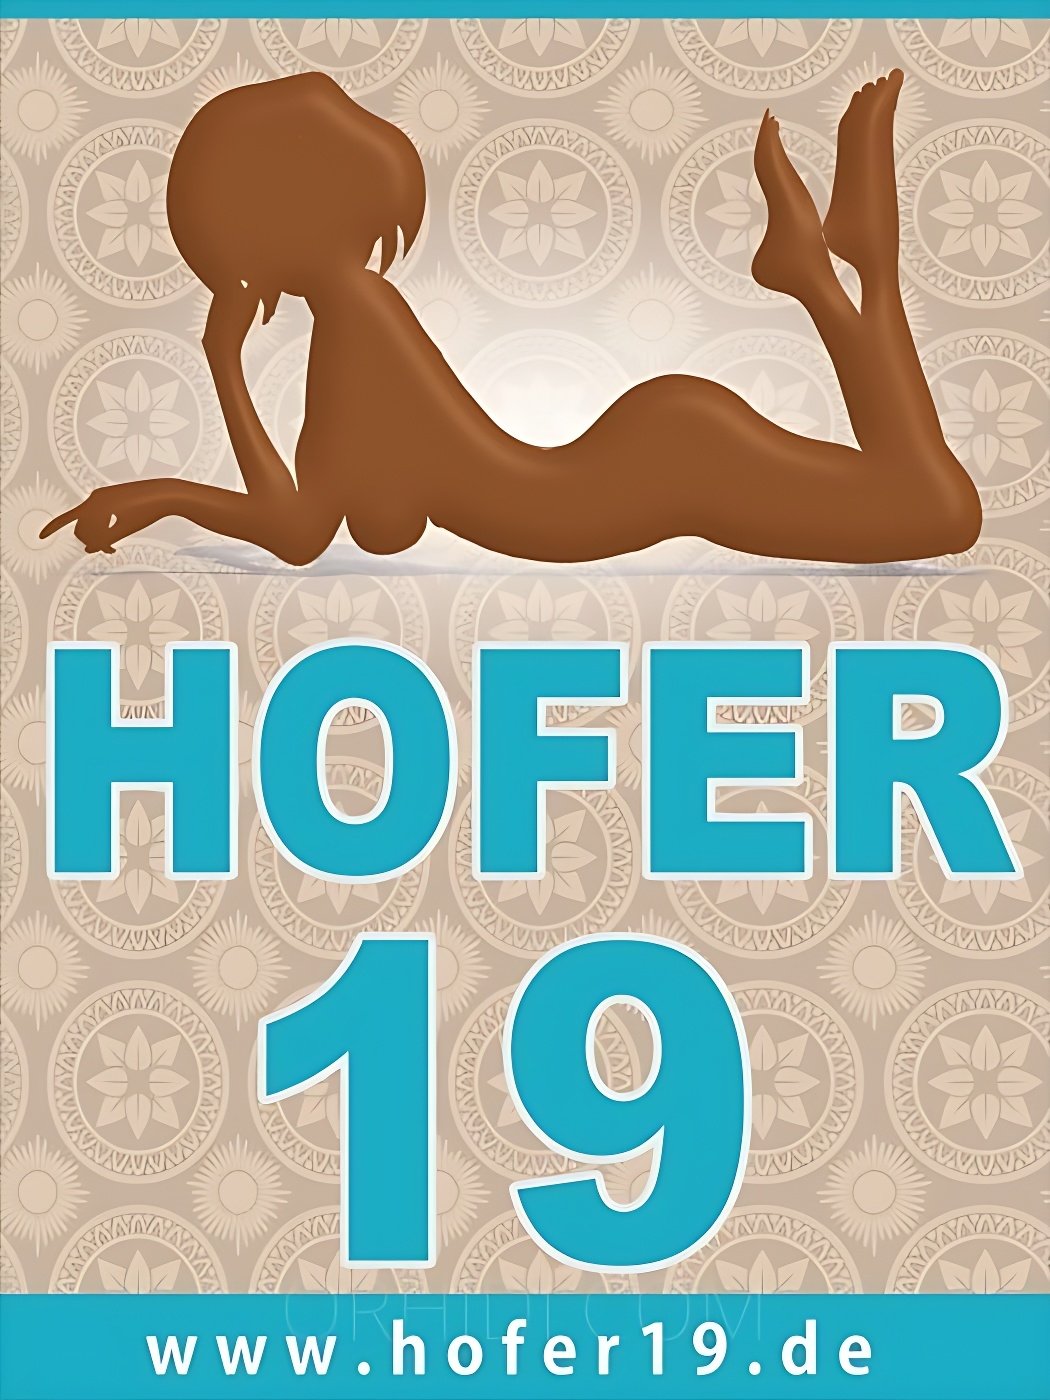 Лучшие Секс вечеринки модели ждут вас - place Hofer 19